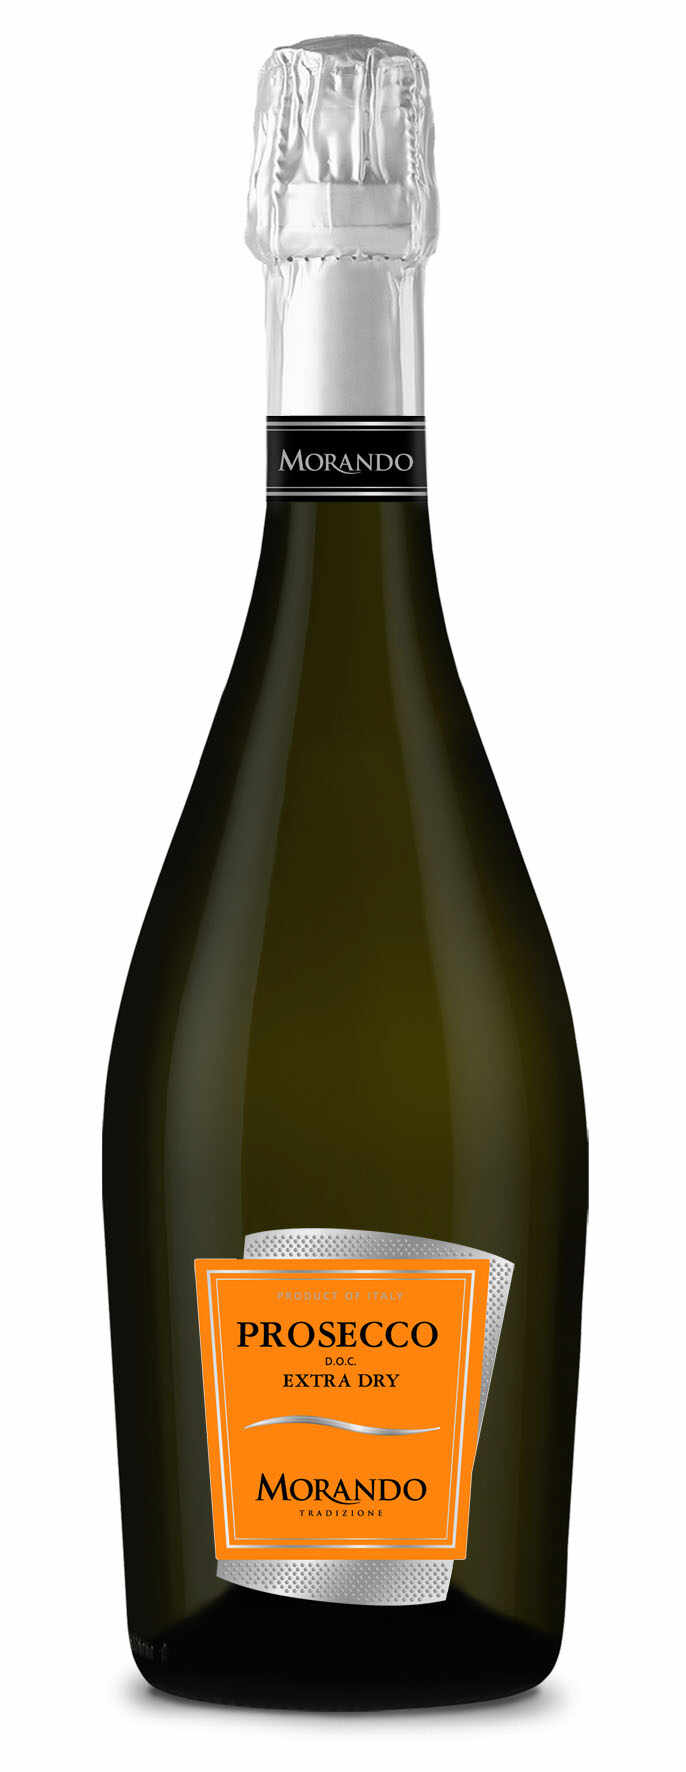 Vin spumant - Morando prosecco,extra dry, demisec, alb | Morando